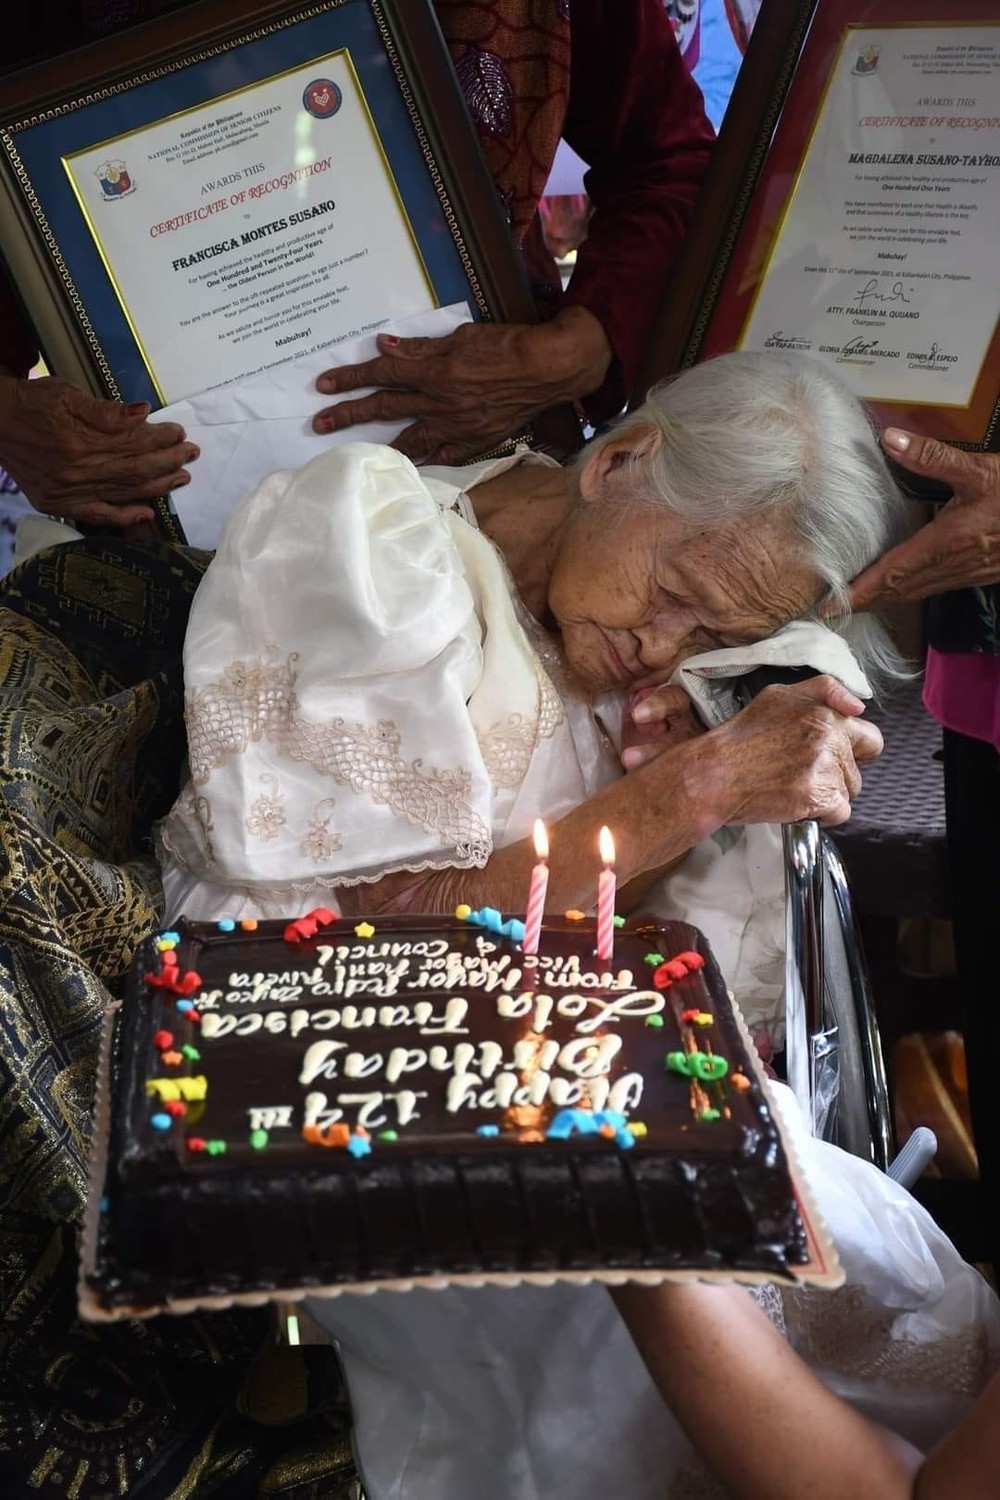 asomadetodosafetos.com - Mulher mais velha do mundo falece aos 124 anos e deixa segredo para longevidade